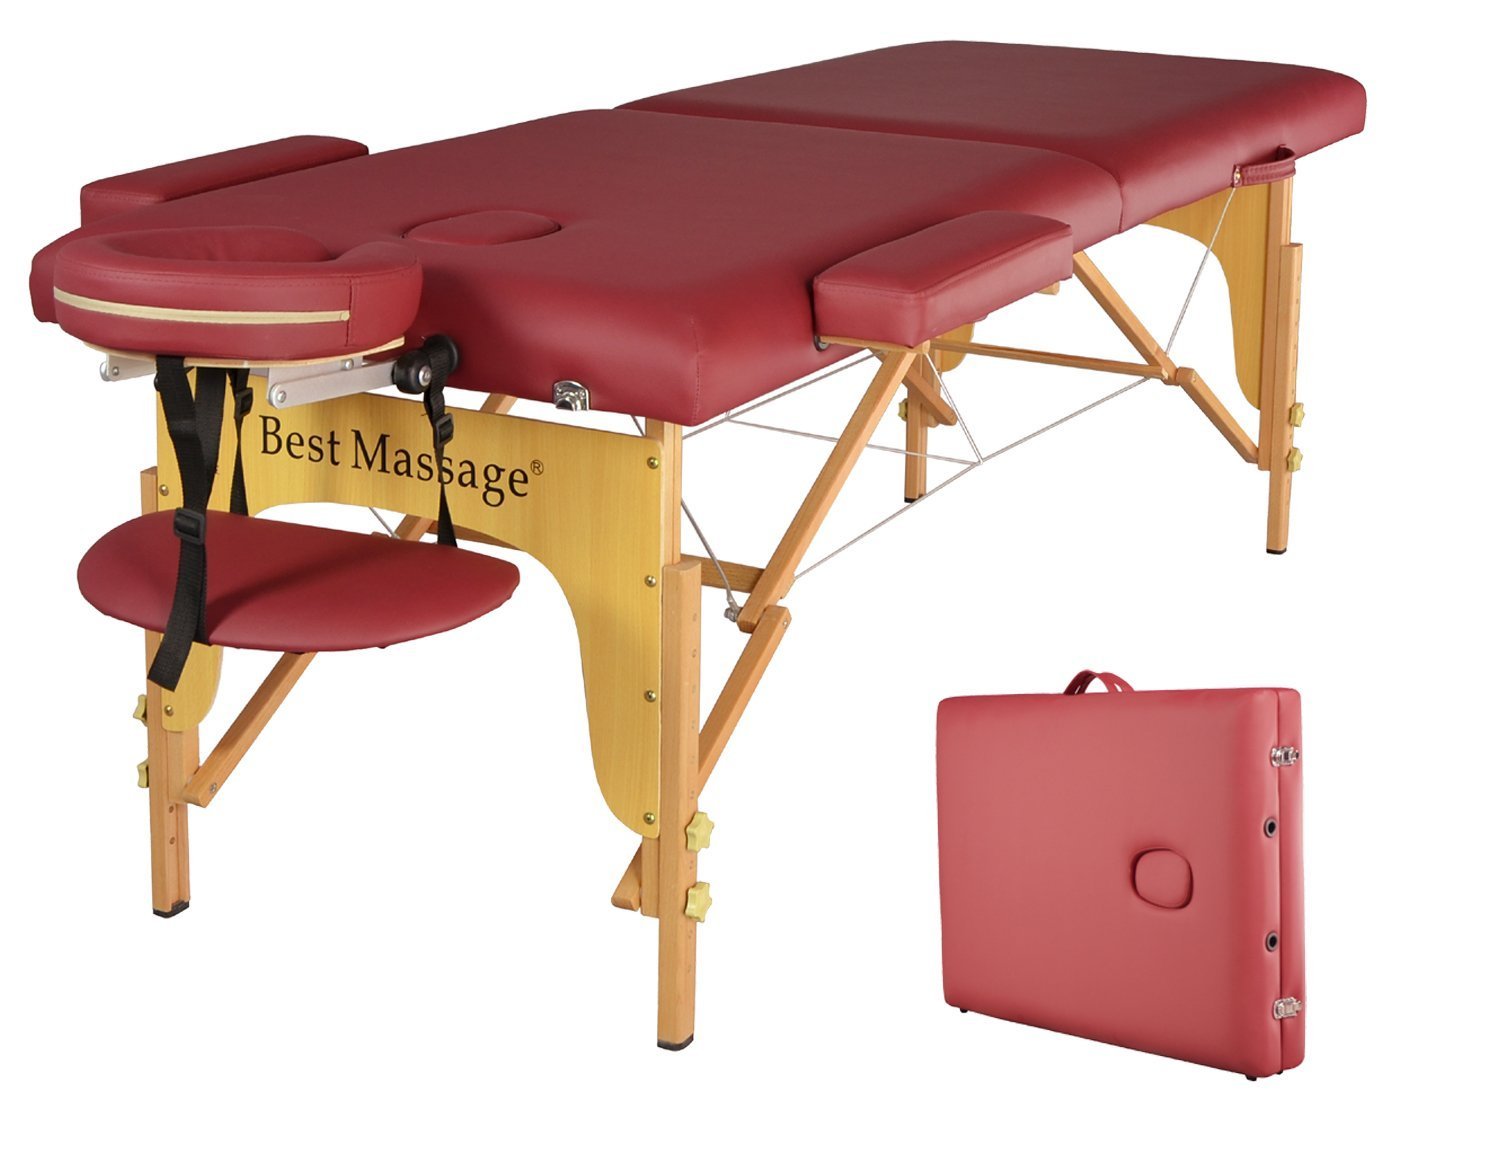 Чехол на массажный стол. Массажный стол Ferrox via Crevada 85. Redcord массажный стол. Массажный стол best massage. Массажный стол с отверстием для живота.